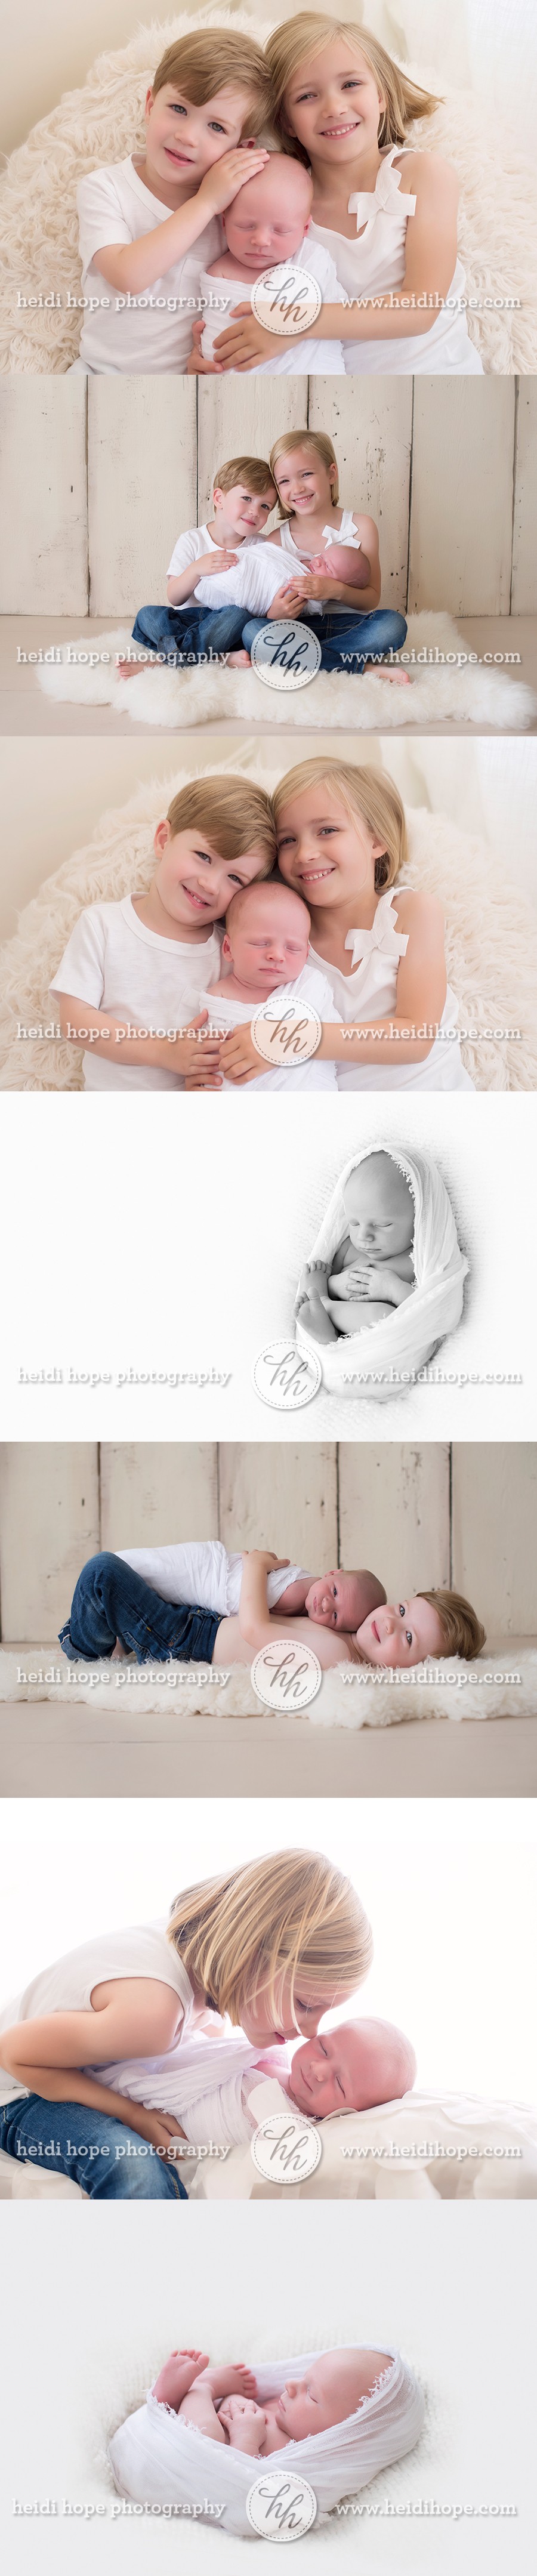 newborn and sibling poses #newborn #portrait #photographer #siblings